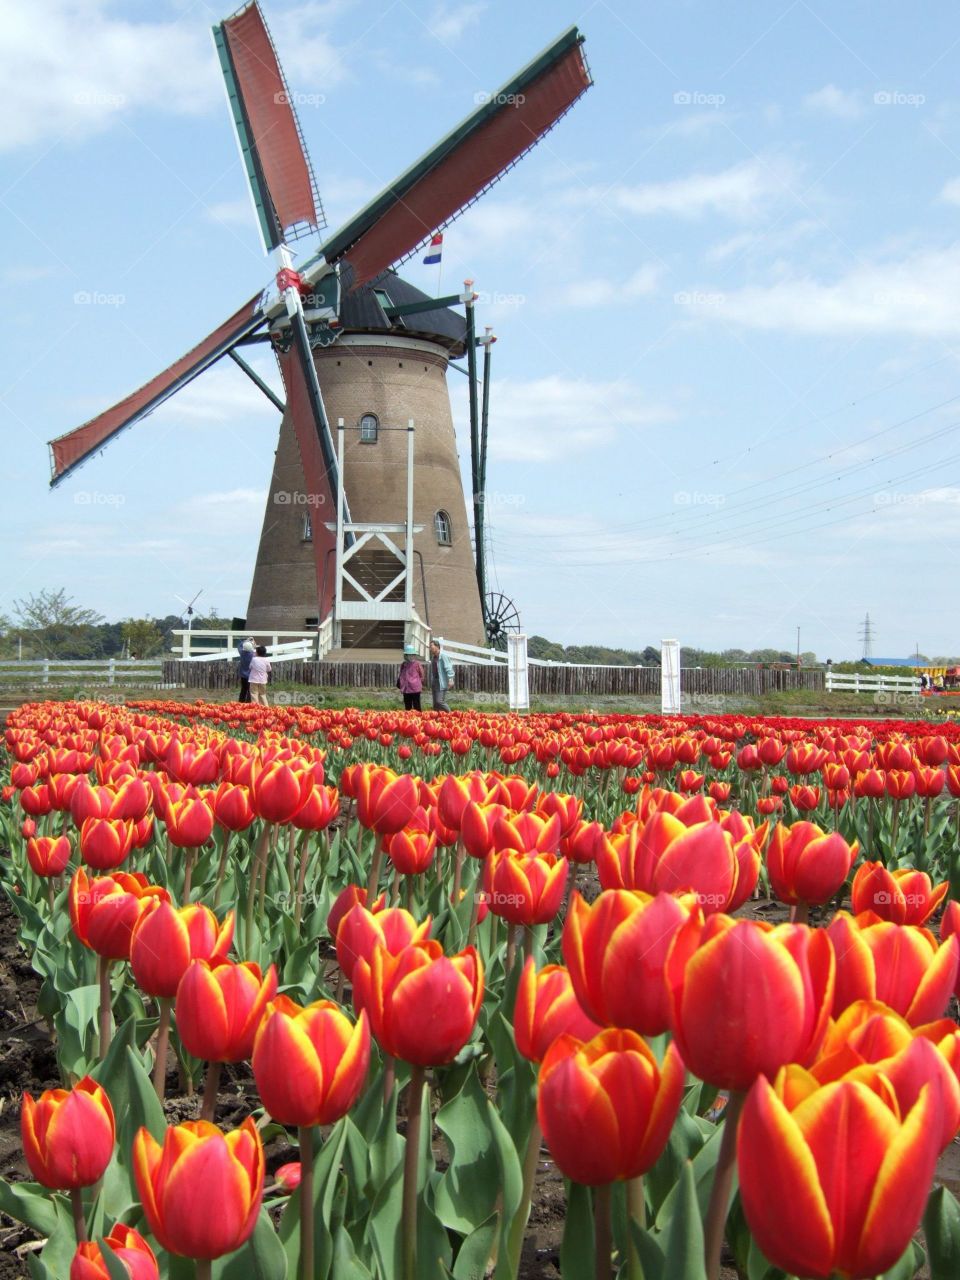 Windmill among many tulips